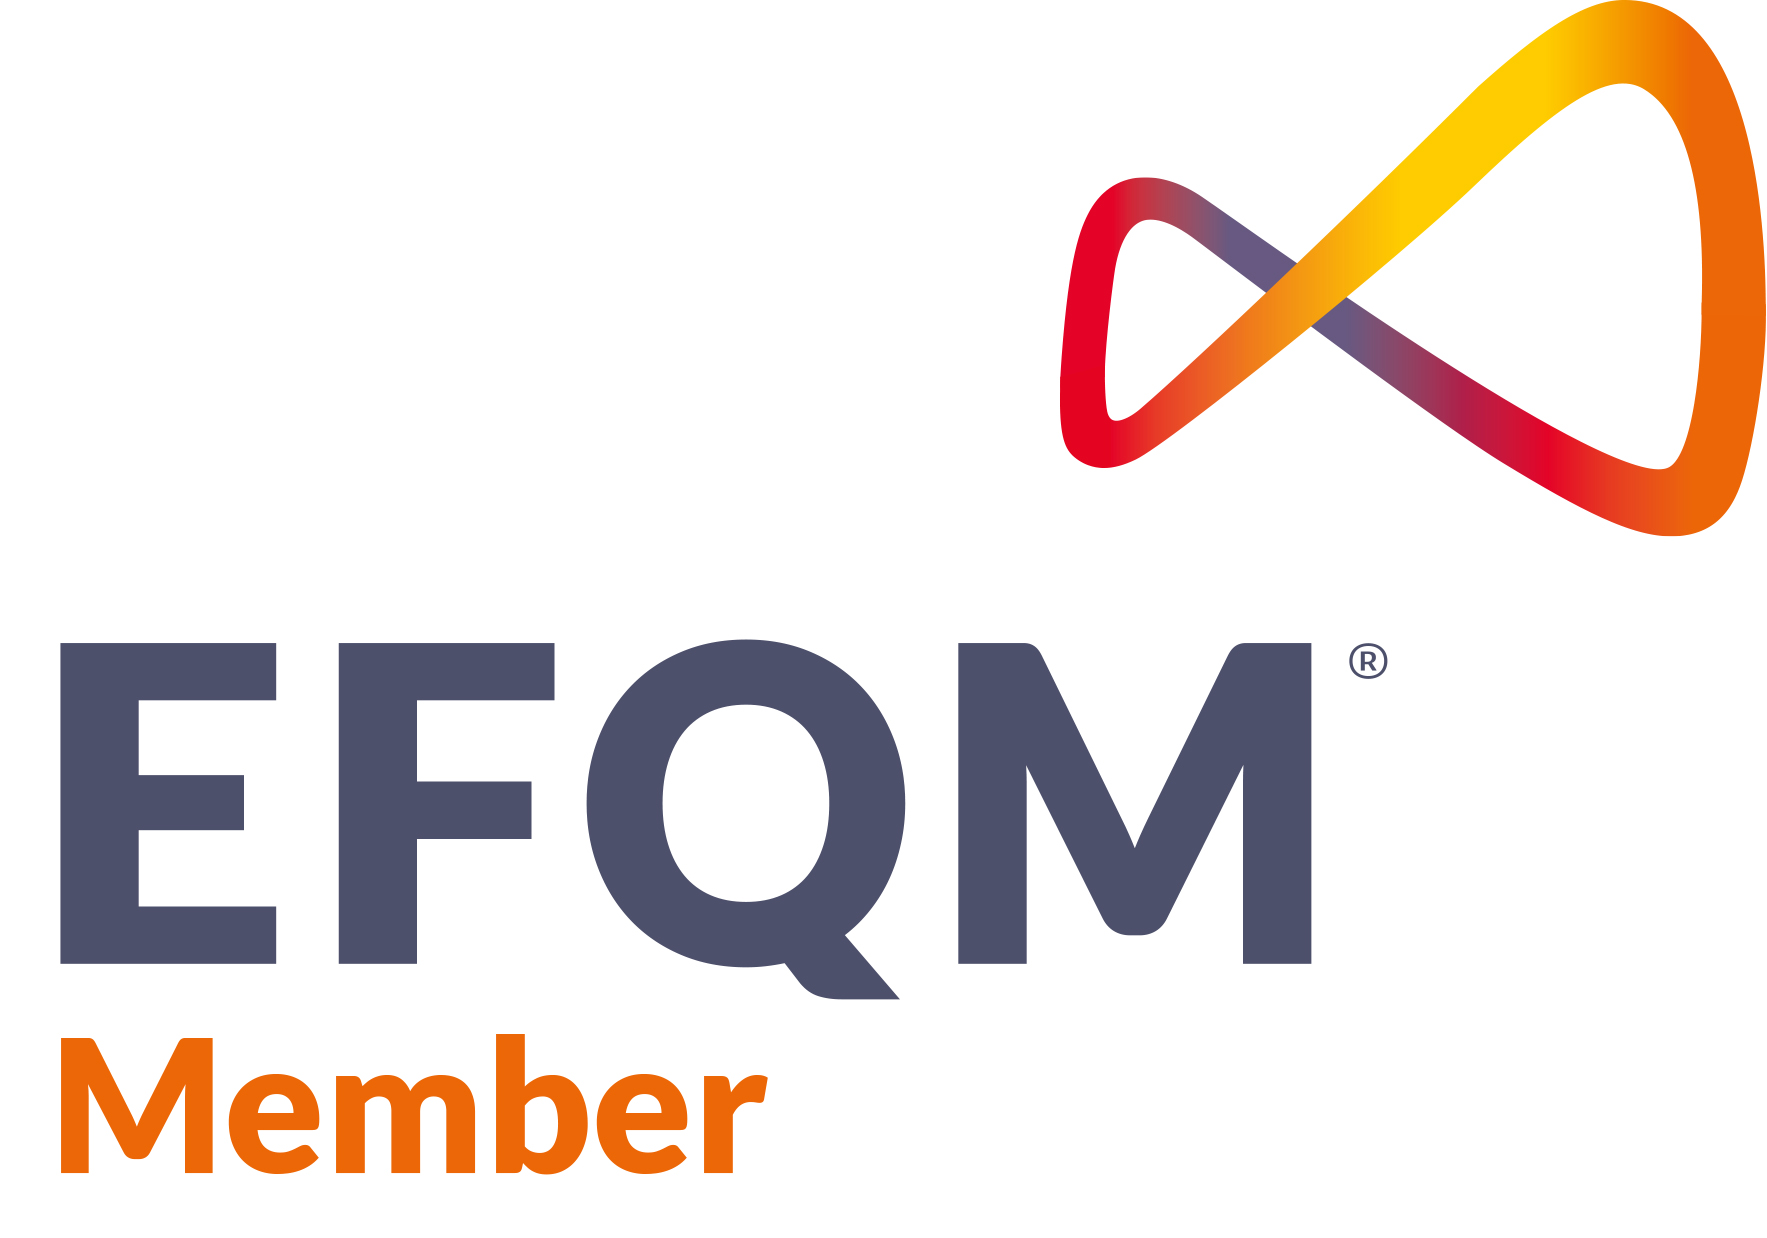 EFQM-Logo